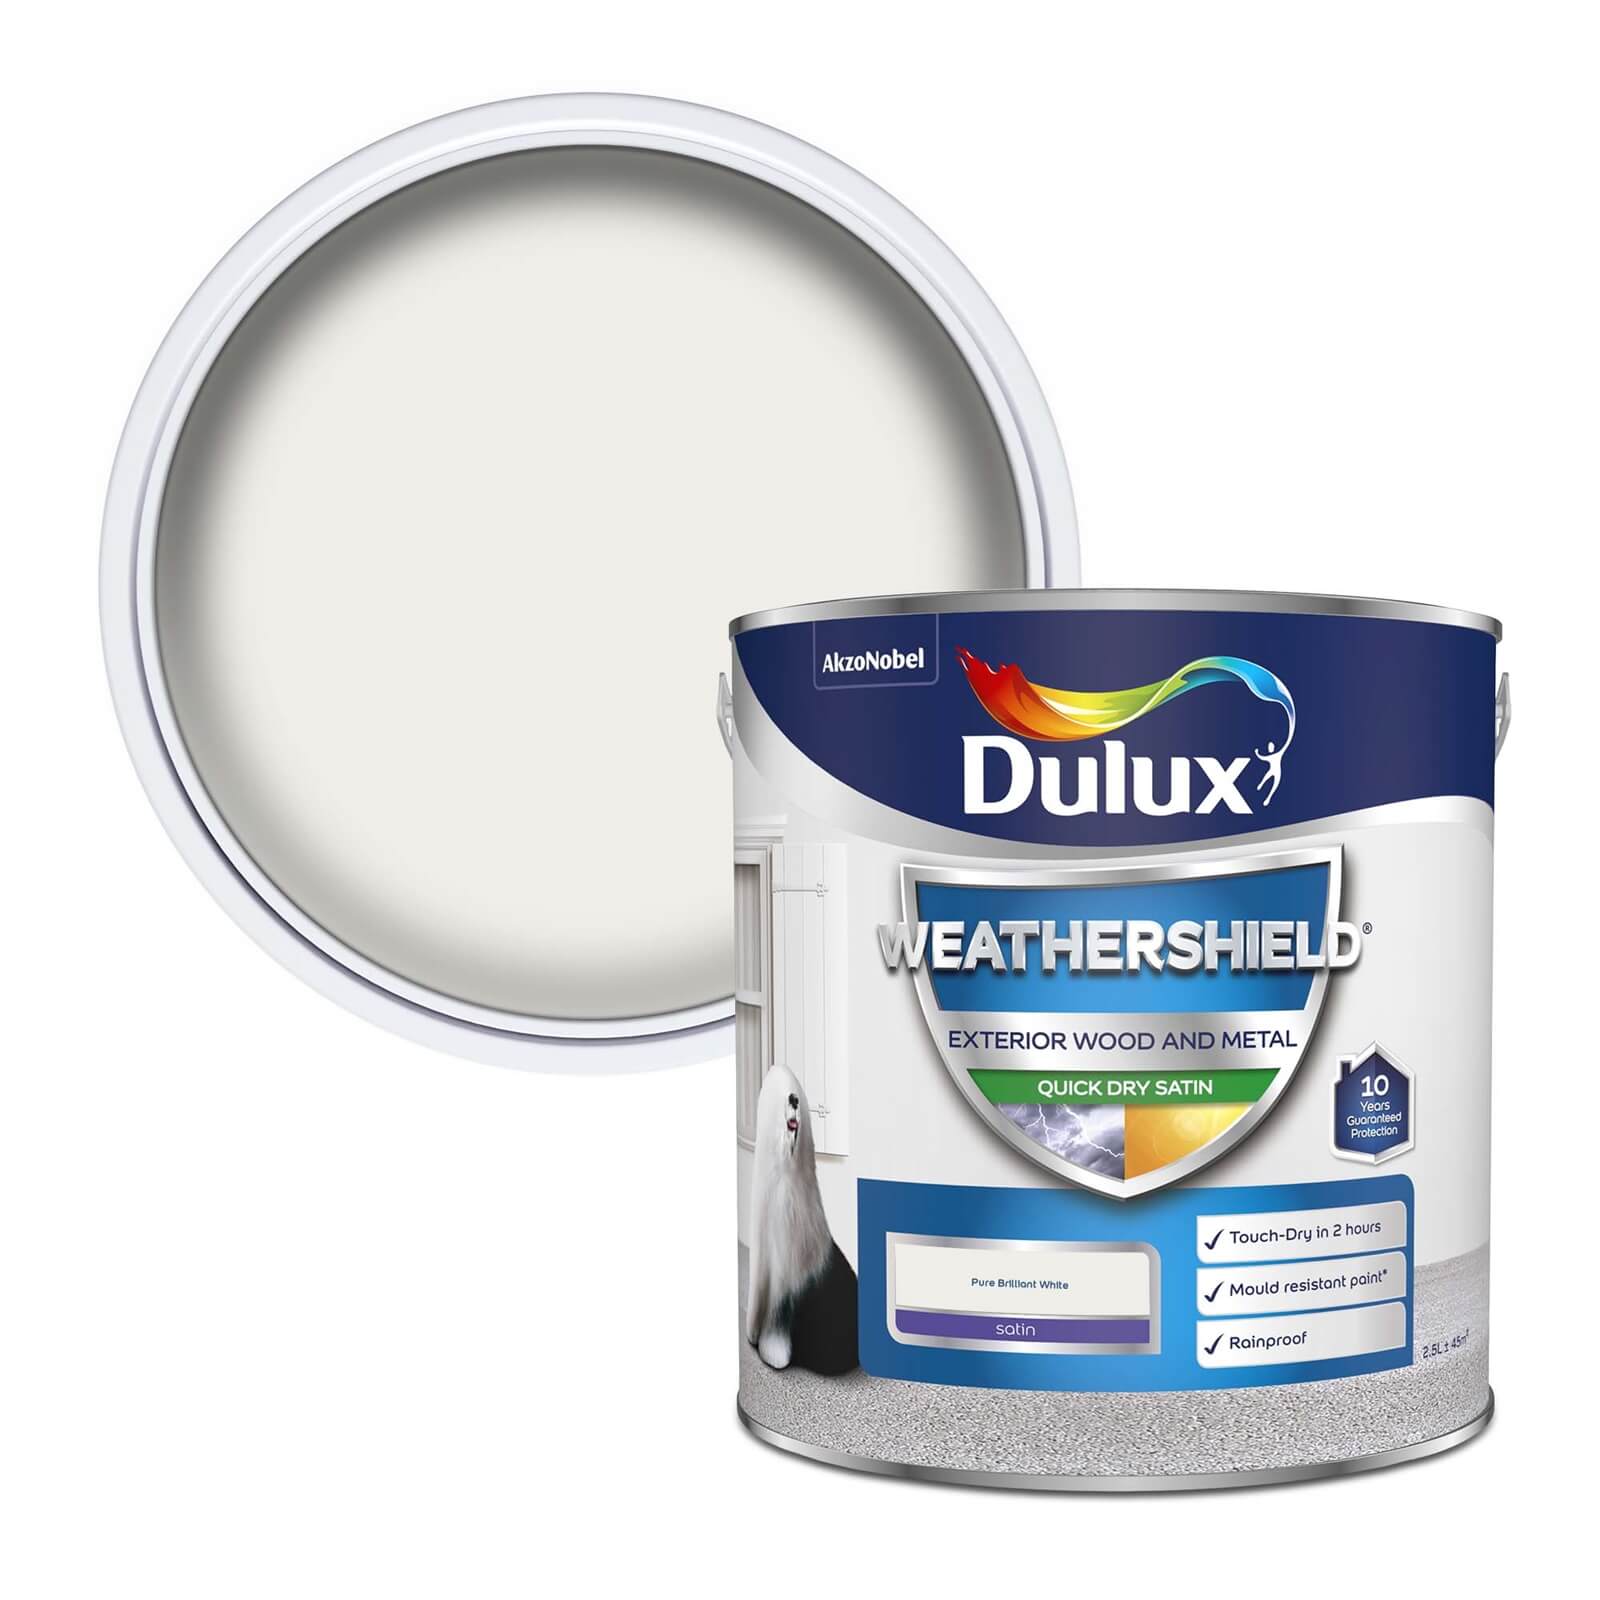 Dulux Weathershield Exterior Quick Dry Satin Paint Pure Brilliant White - 2.5L